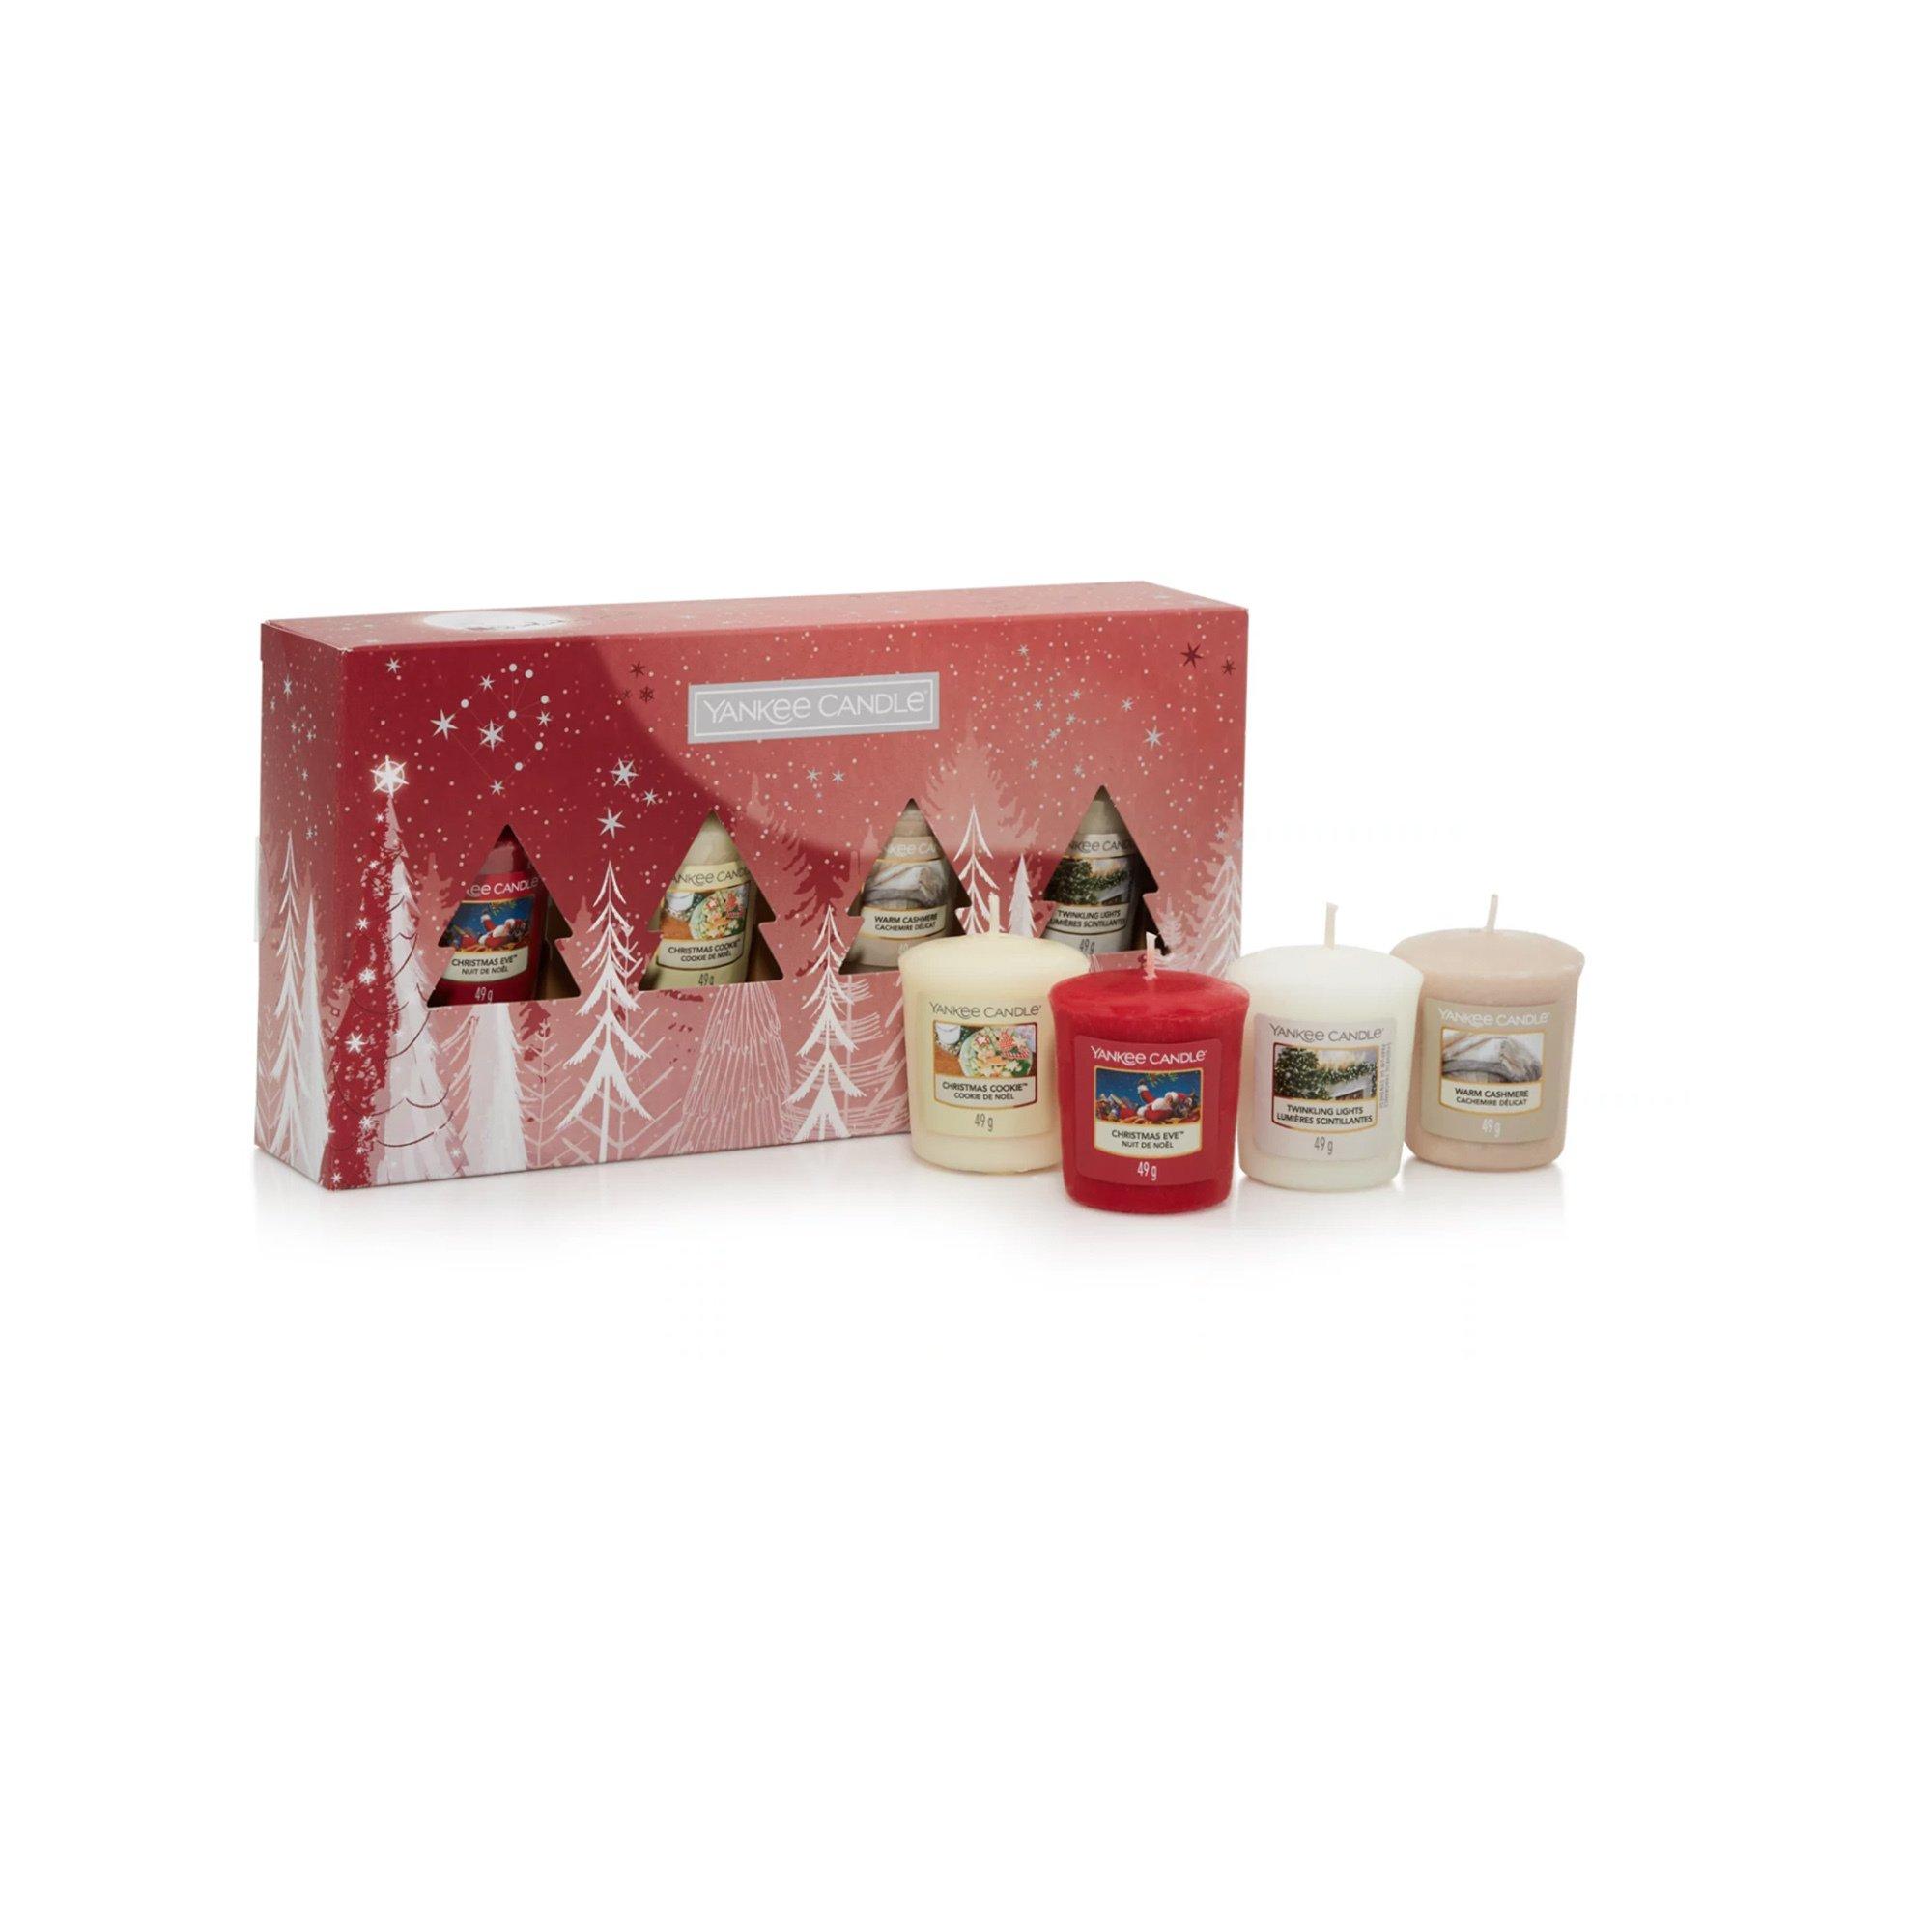 YANKEE CANDLE Geschenkset Weihnachten Duftkerzen Holiday Bright Lights 4 Original Votive Giftset 